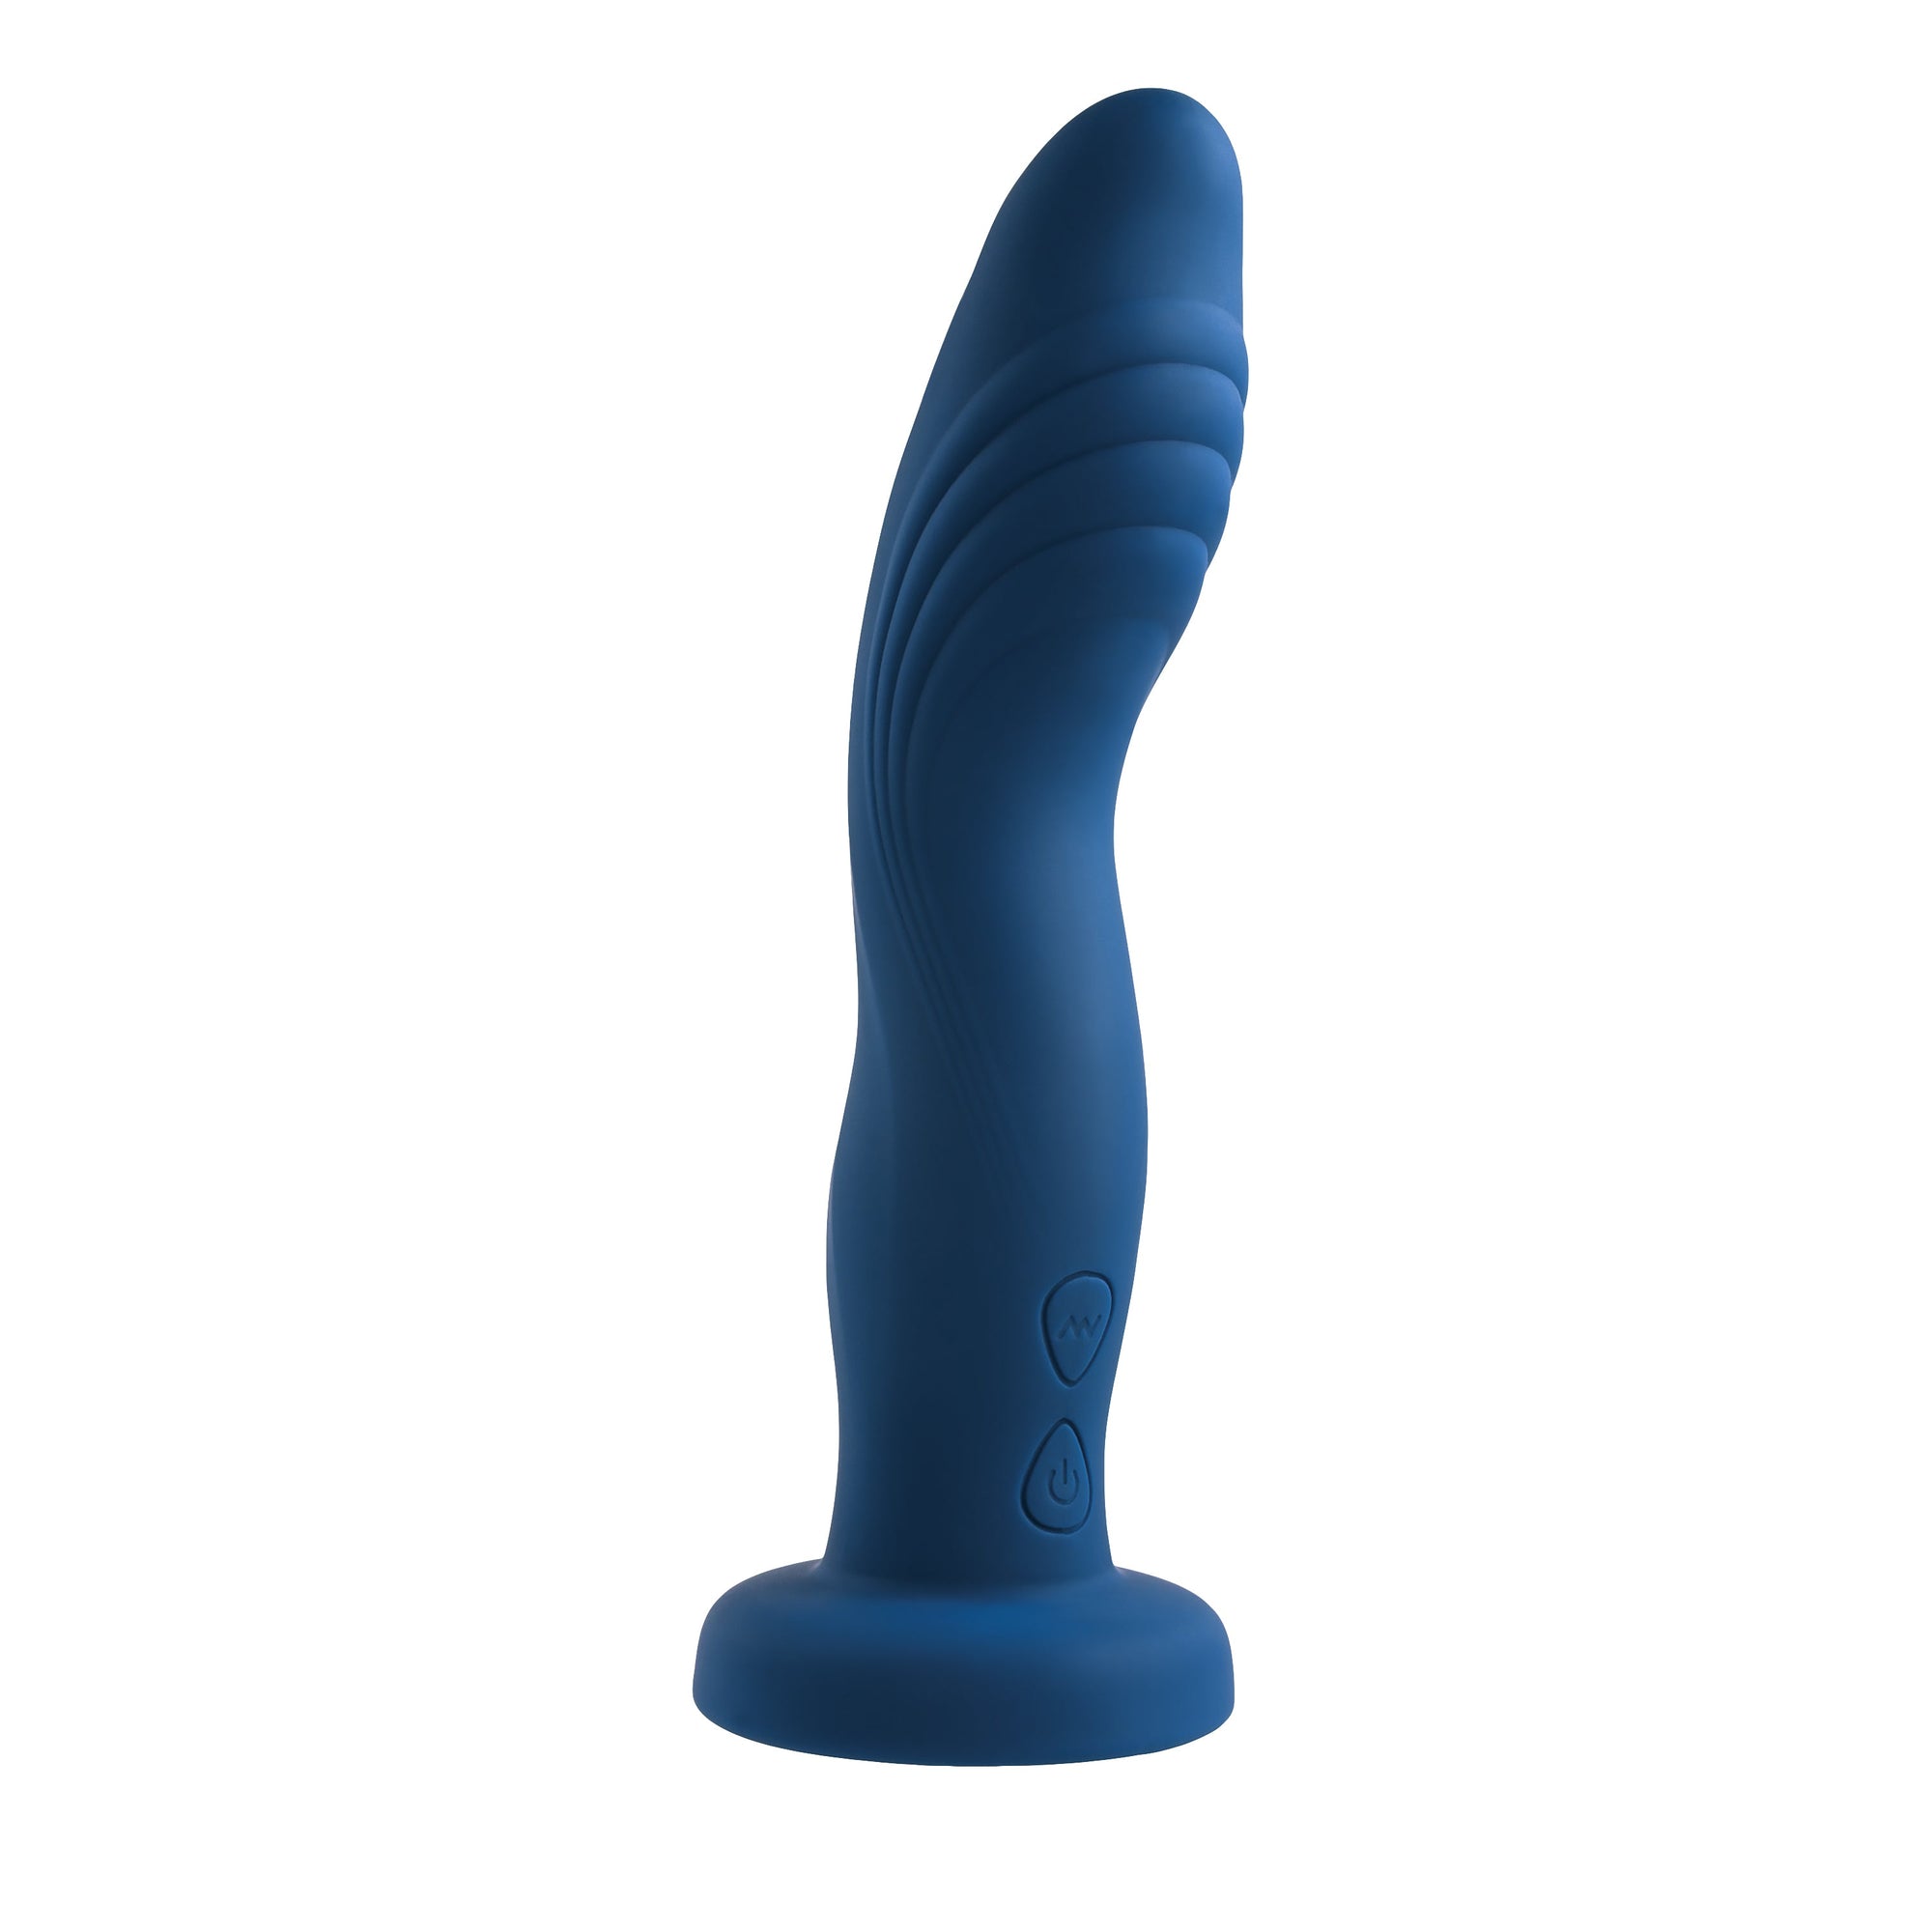 Evolved - Gender X Snuggle Up Remote Vibrating Strap On (Blue)